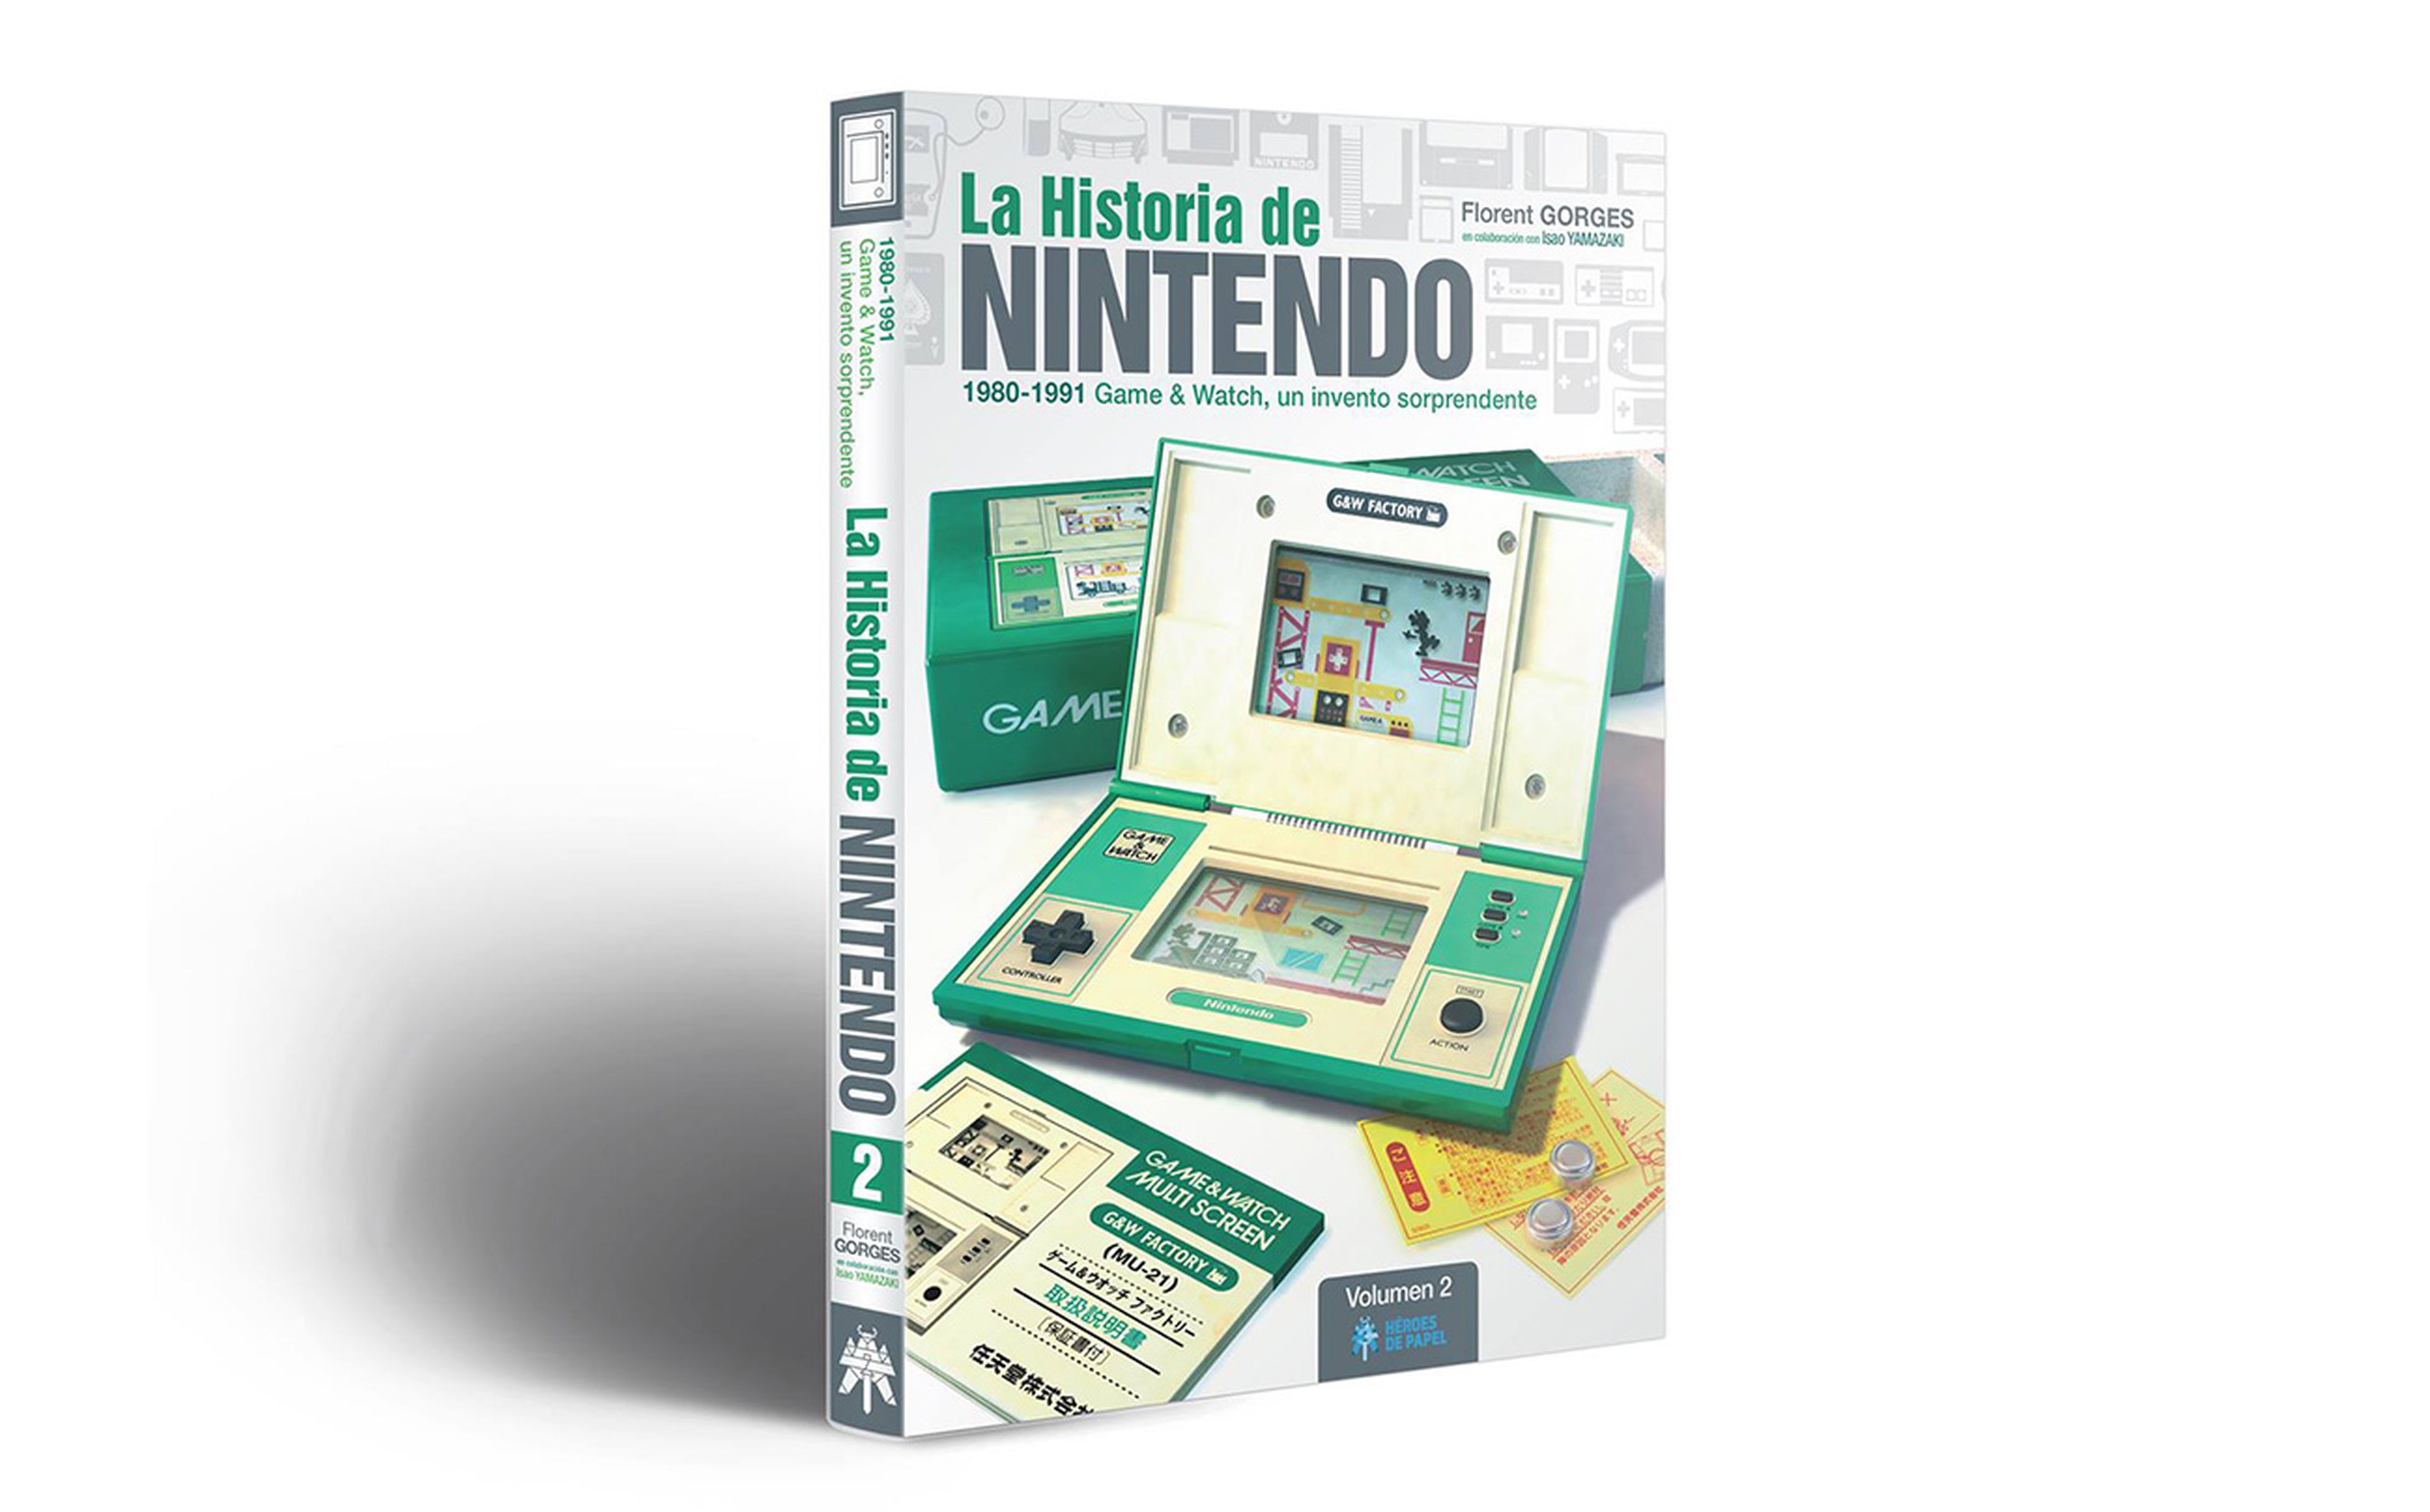 La Historia de Nintendo Vol.2 se centra en la historia de las consolas portátiles Game & Watch.